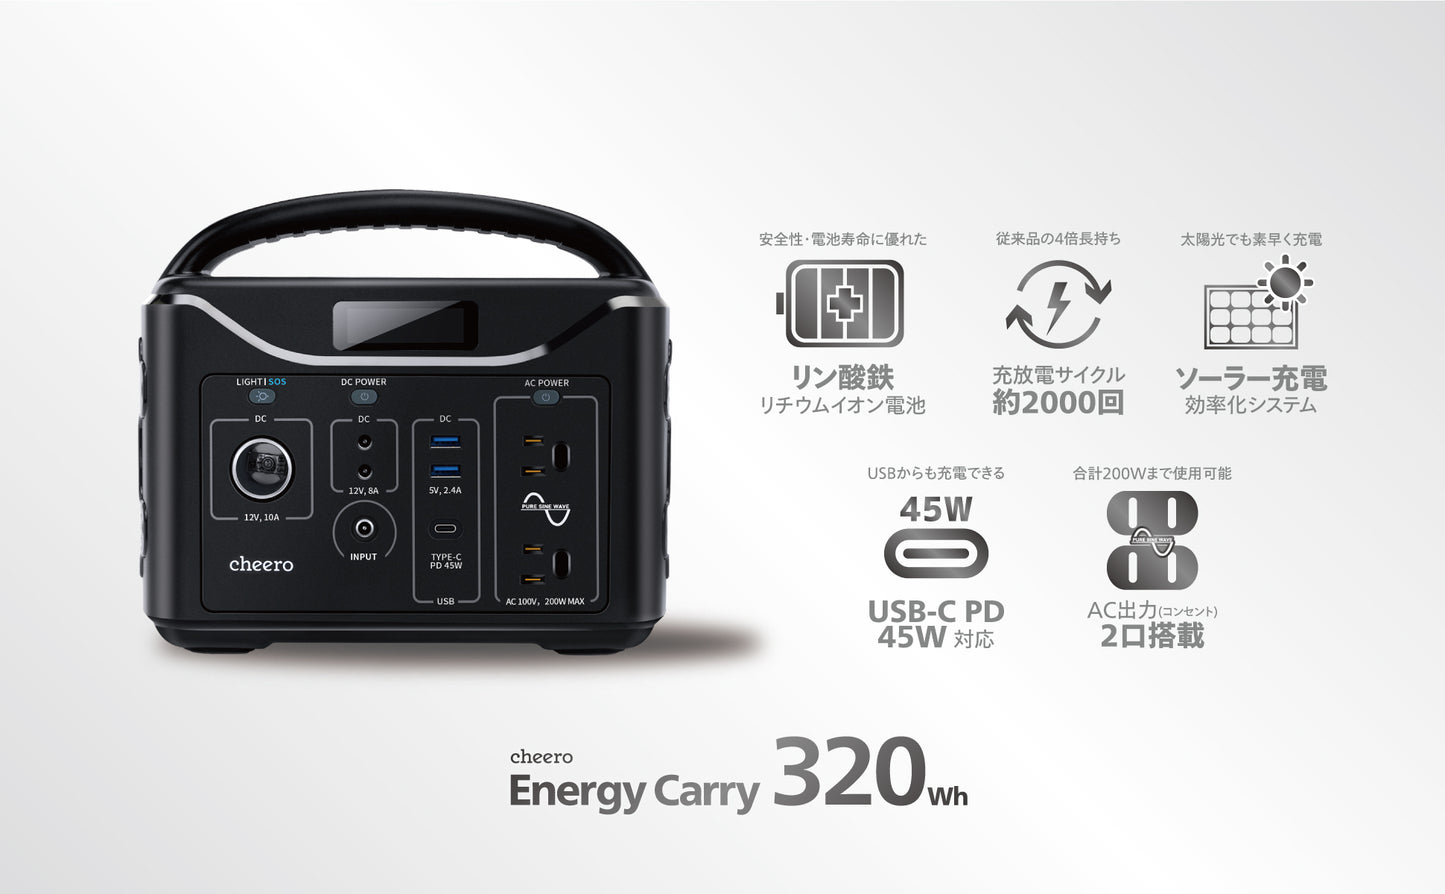 cheero Energy Carry 320Wh